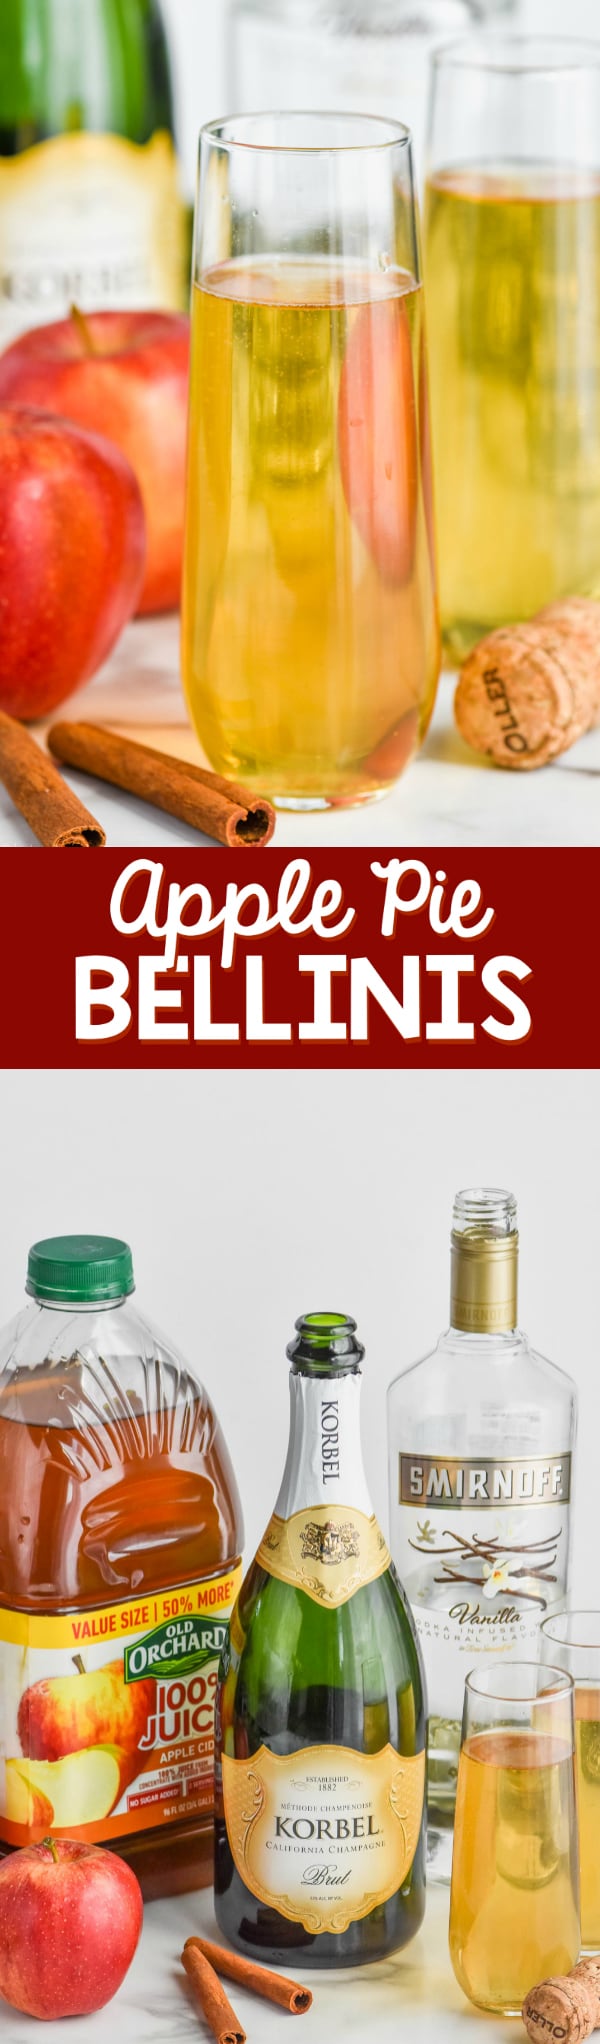 champagne glass of easy bellini recipe, apple pie bellini